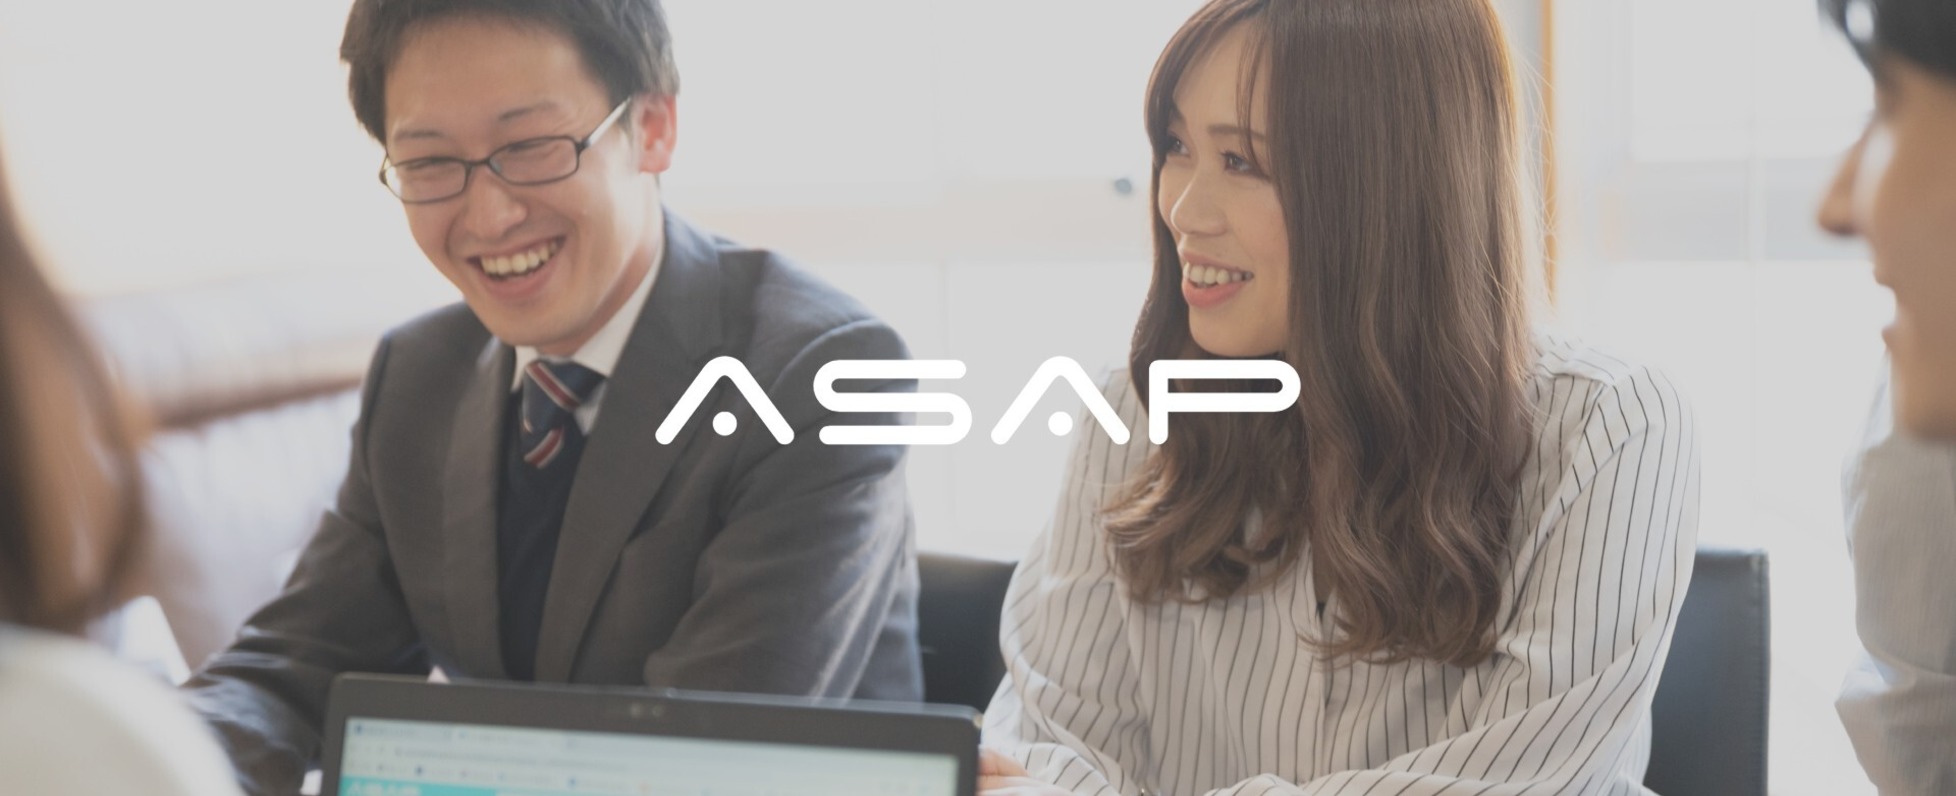 20 株式 会社 Asap 電気 New